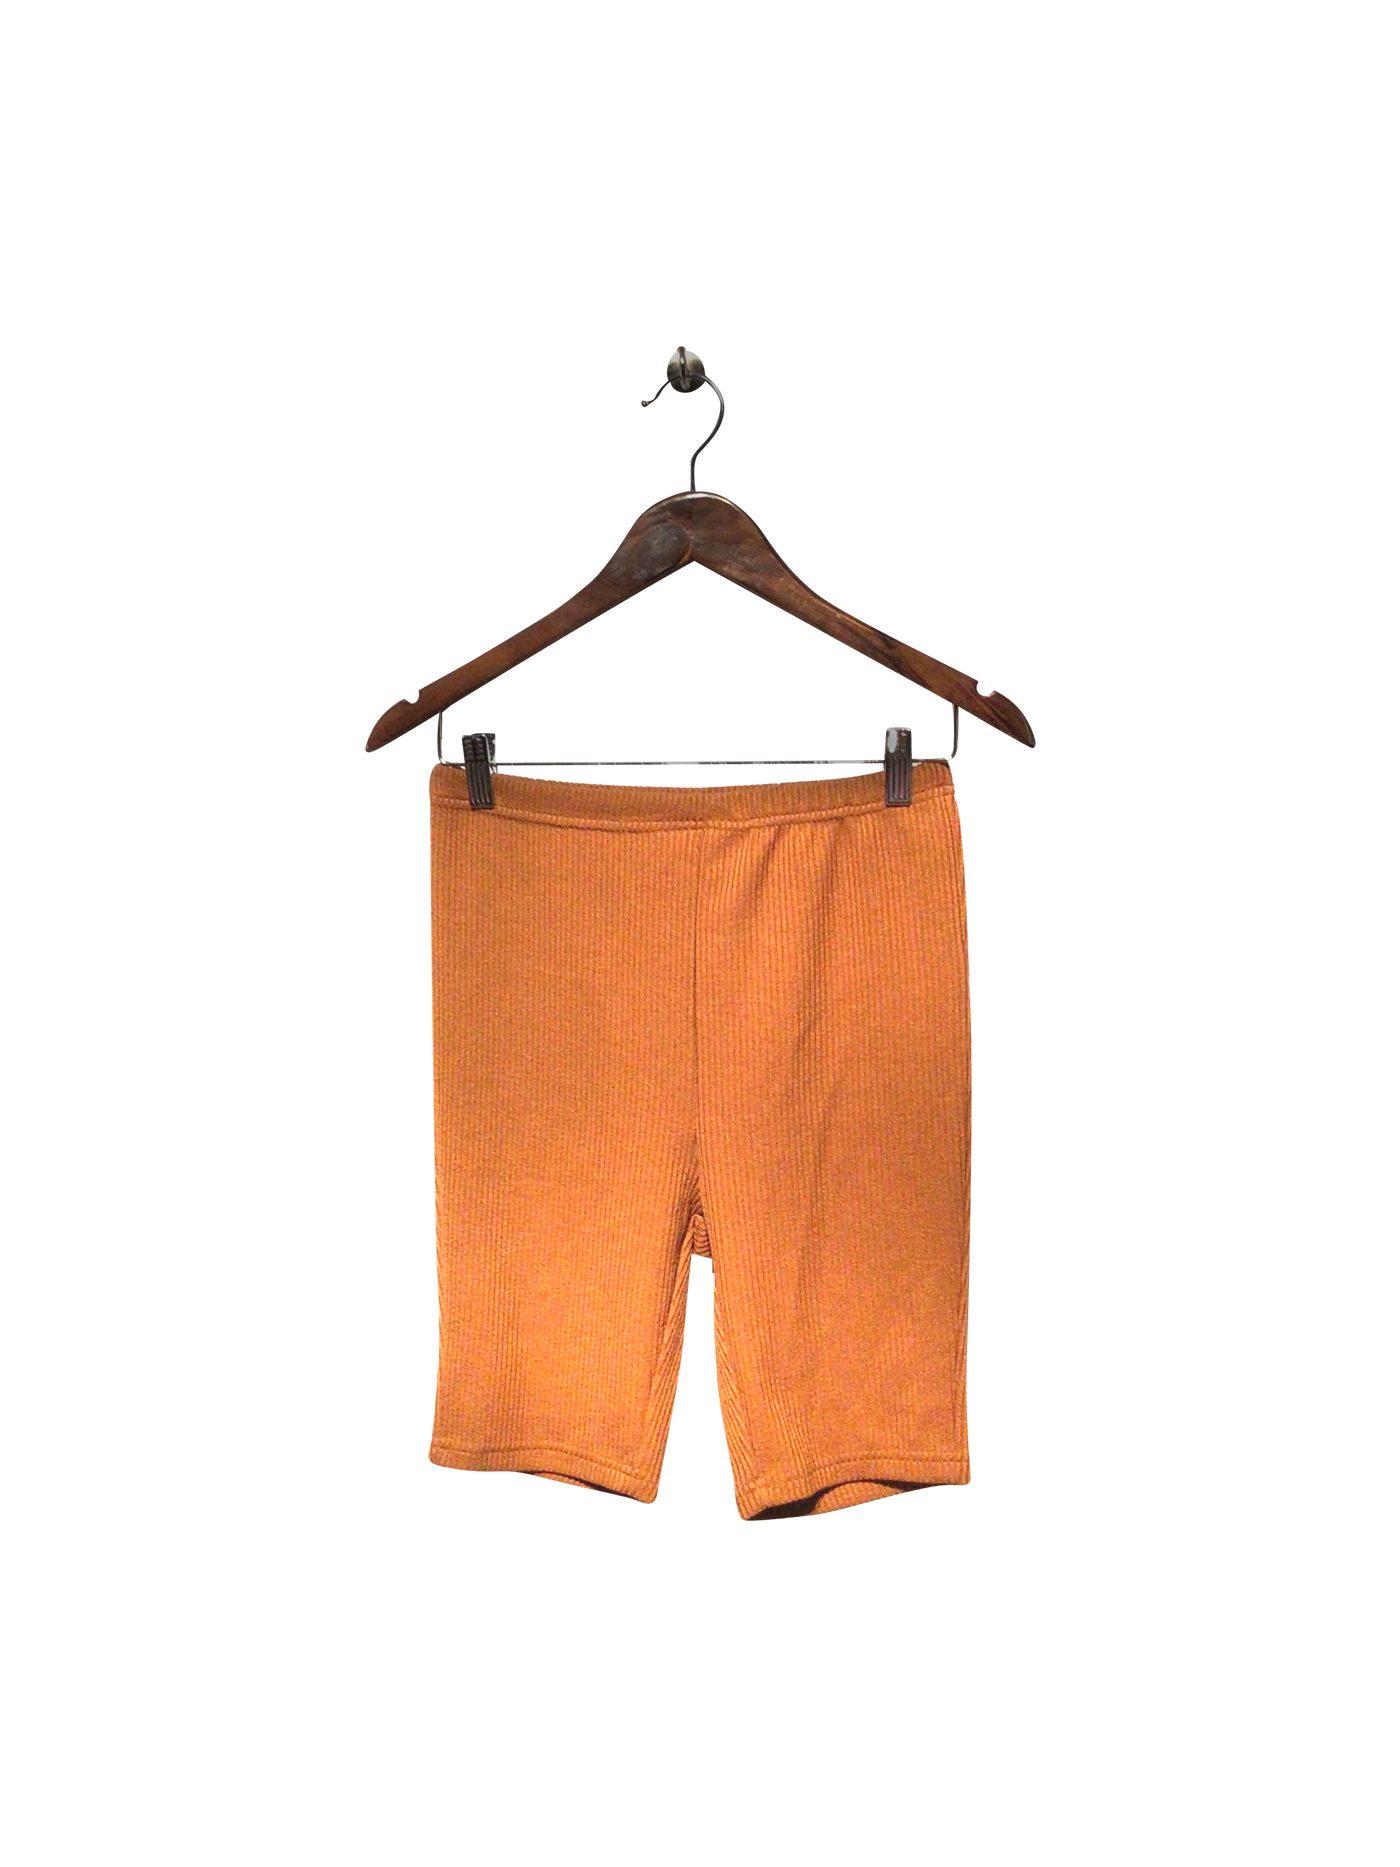 SHEIN Regular fit Pant Shorts in Brown  -  S  5.20 Koop